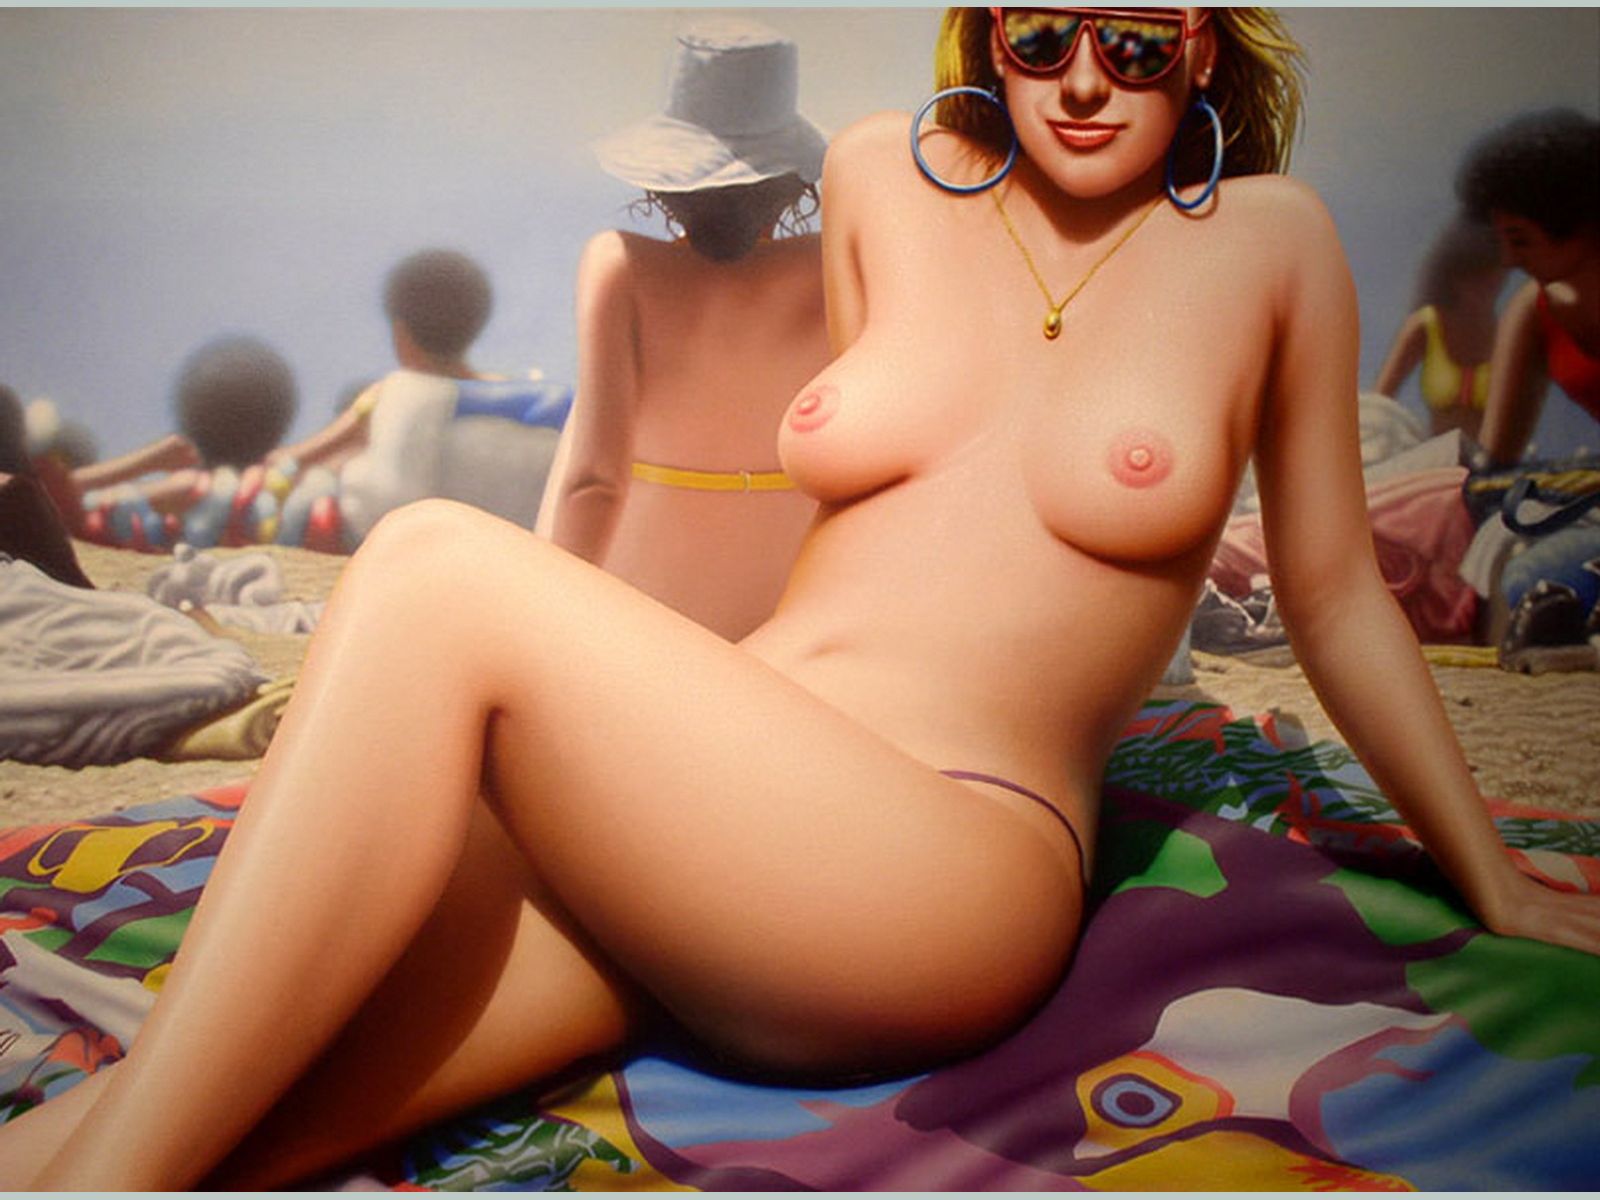 нарисованная девушка, девушка в солнечных очках топлесс на пляже.  картинки для рабочего стола торрент